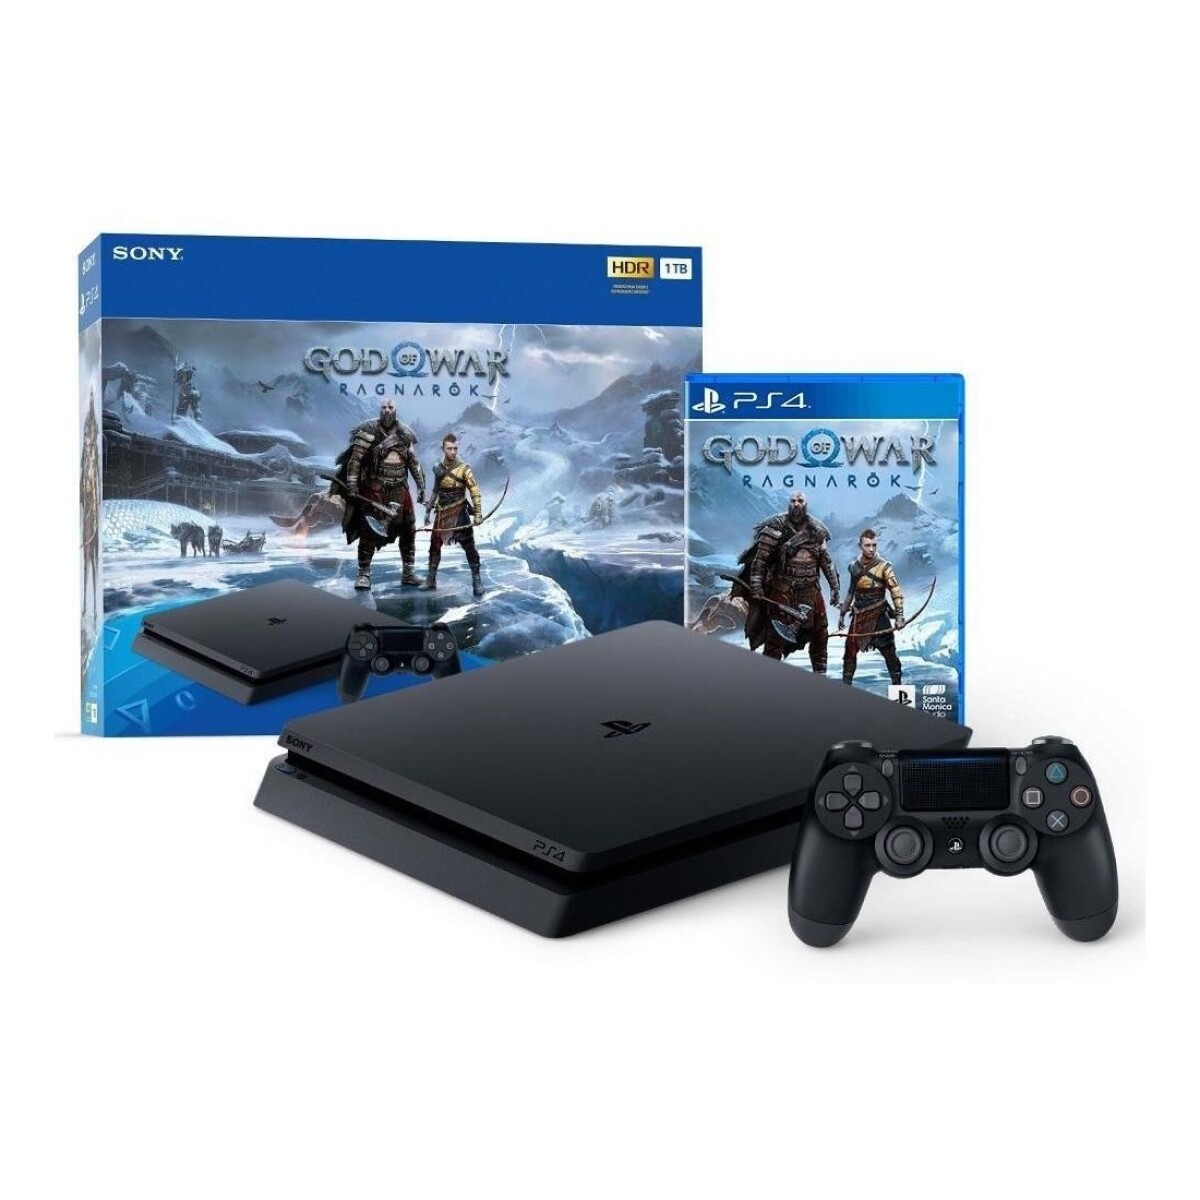 Sony PlayStation 4 Slim 1TB God Of War Ragnarok CUH-2215B - Negro 